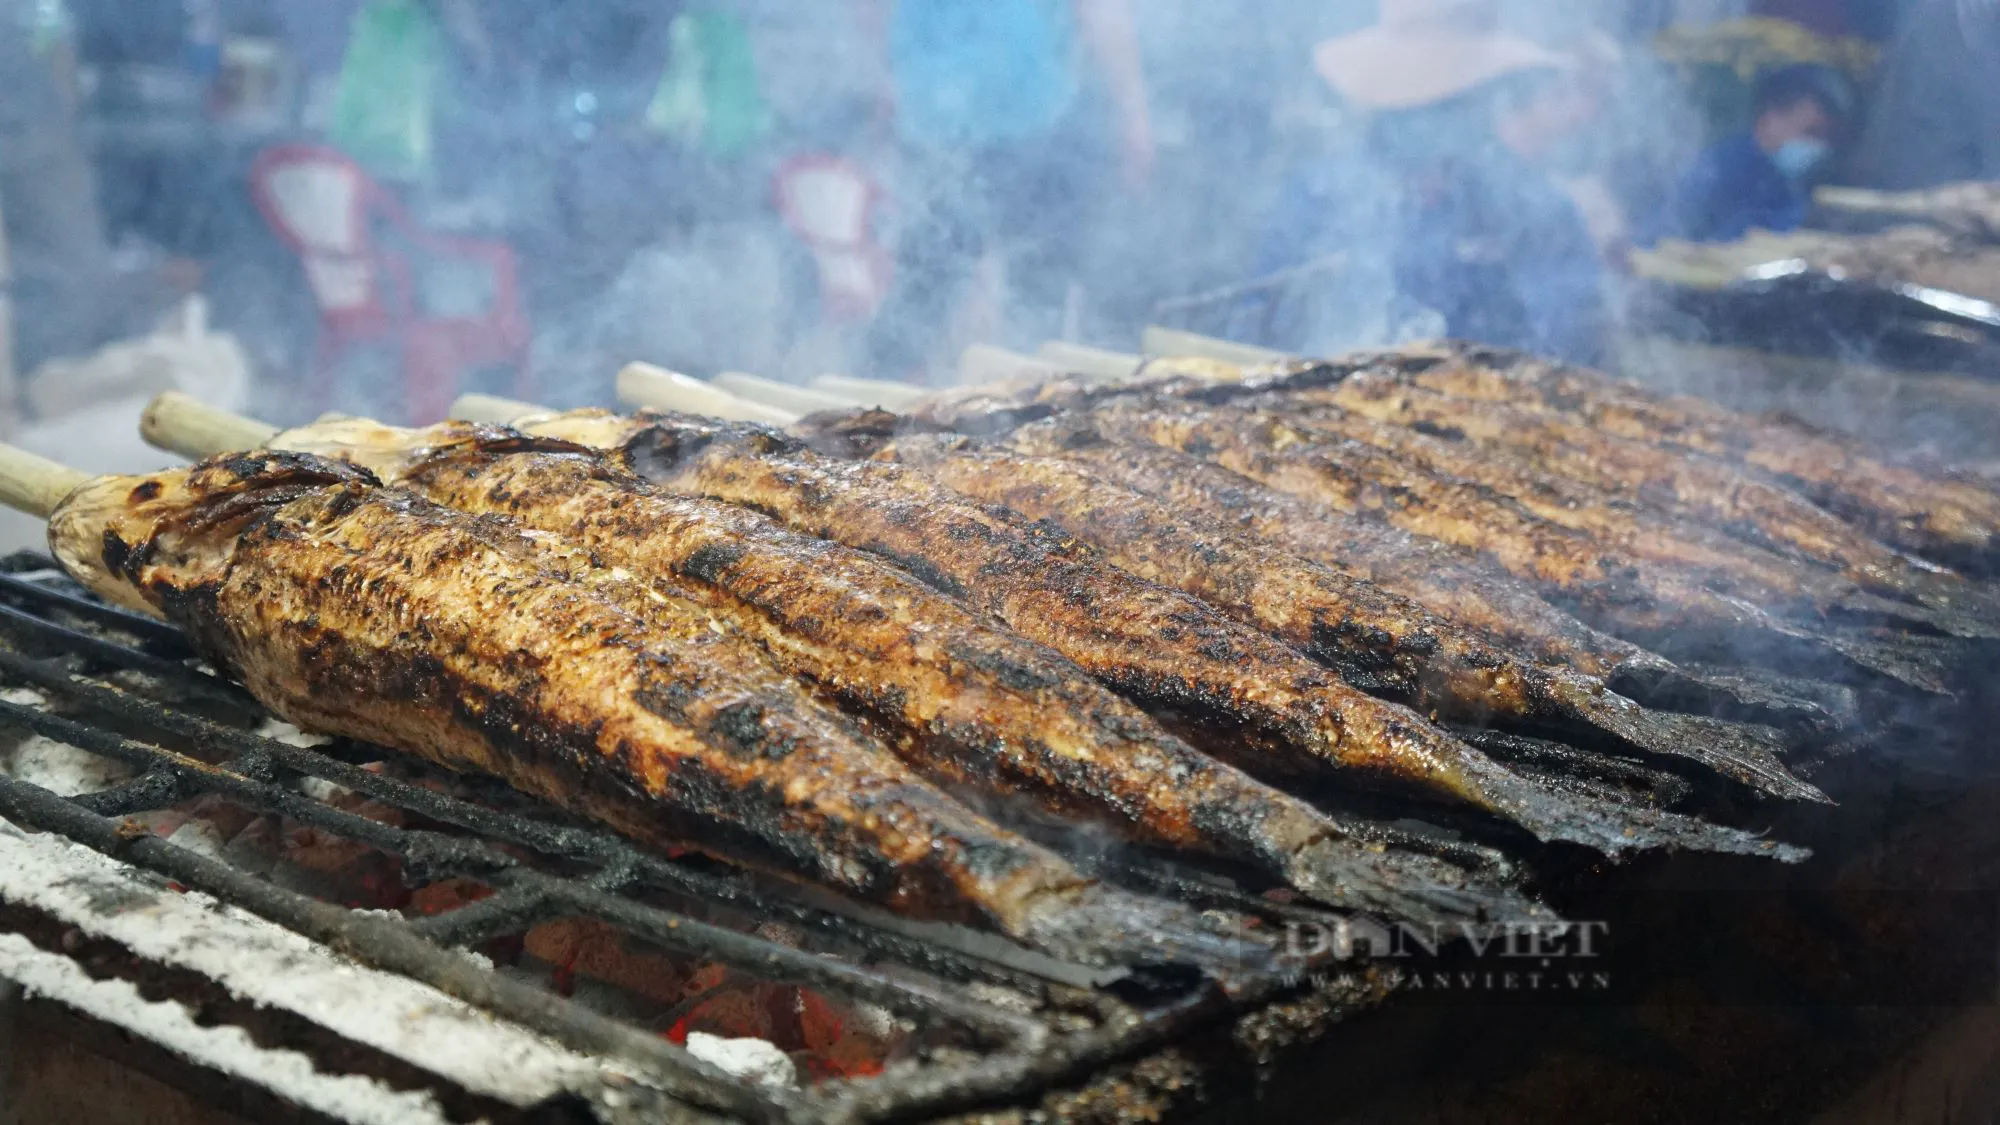 Sáng đêm nướng cá lóc bán ngày vía Thần Tài ở TP.HCM, có tiệm huy động 40 người nướng hàng tấn cá- Ảnh 10.